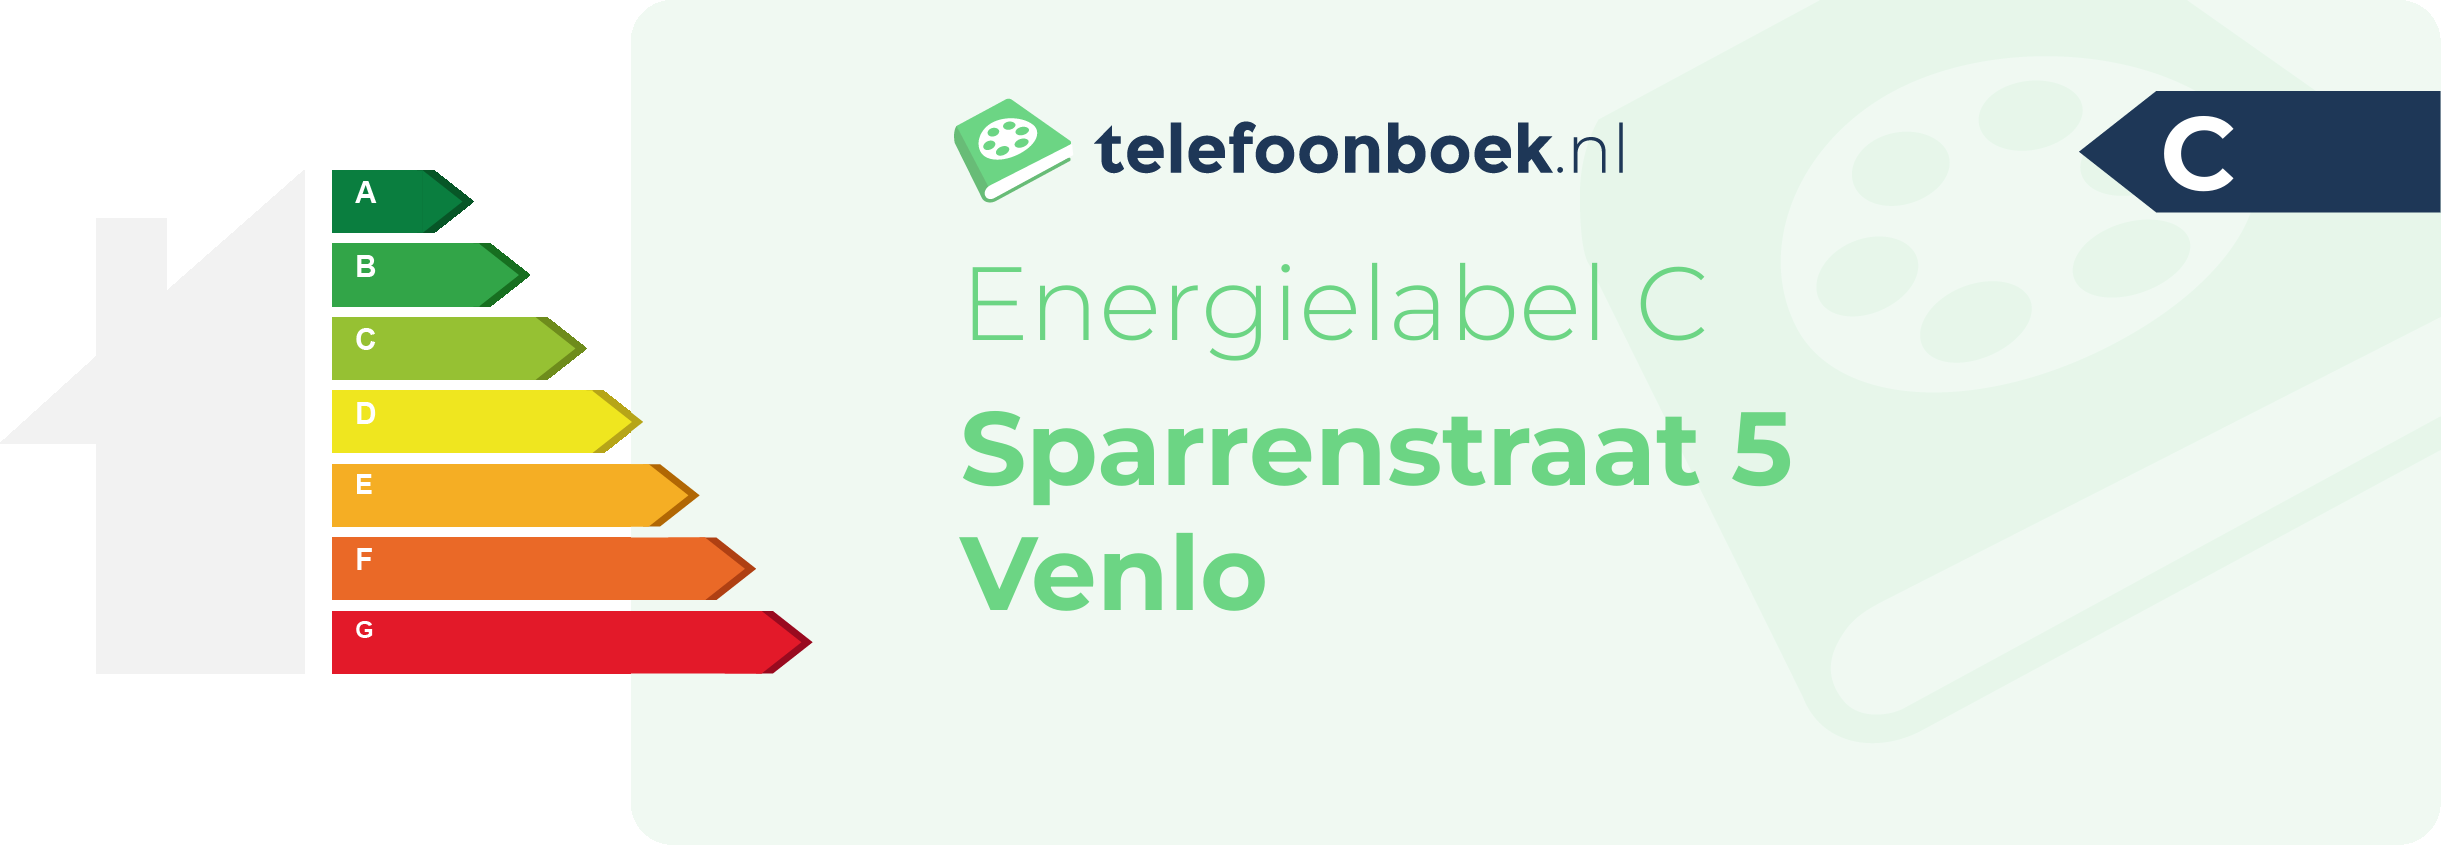 Energielabel Sparrenstraat 5 Venlo